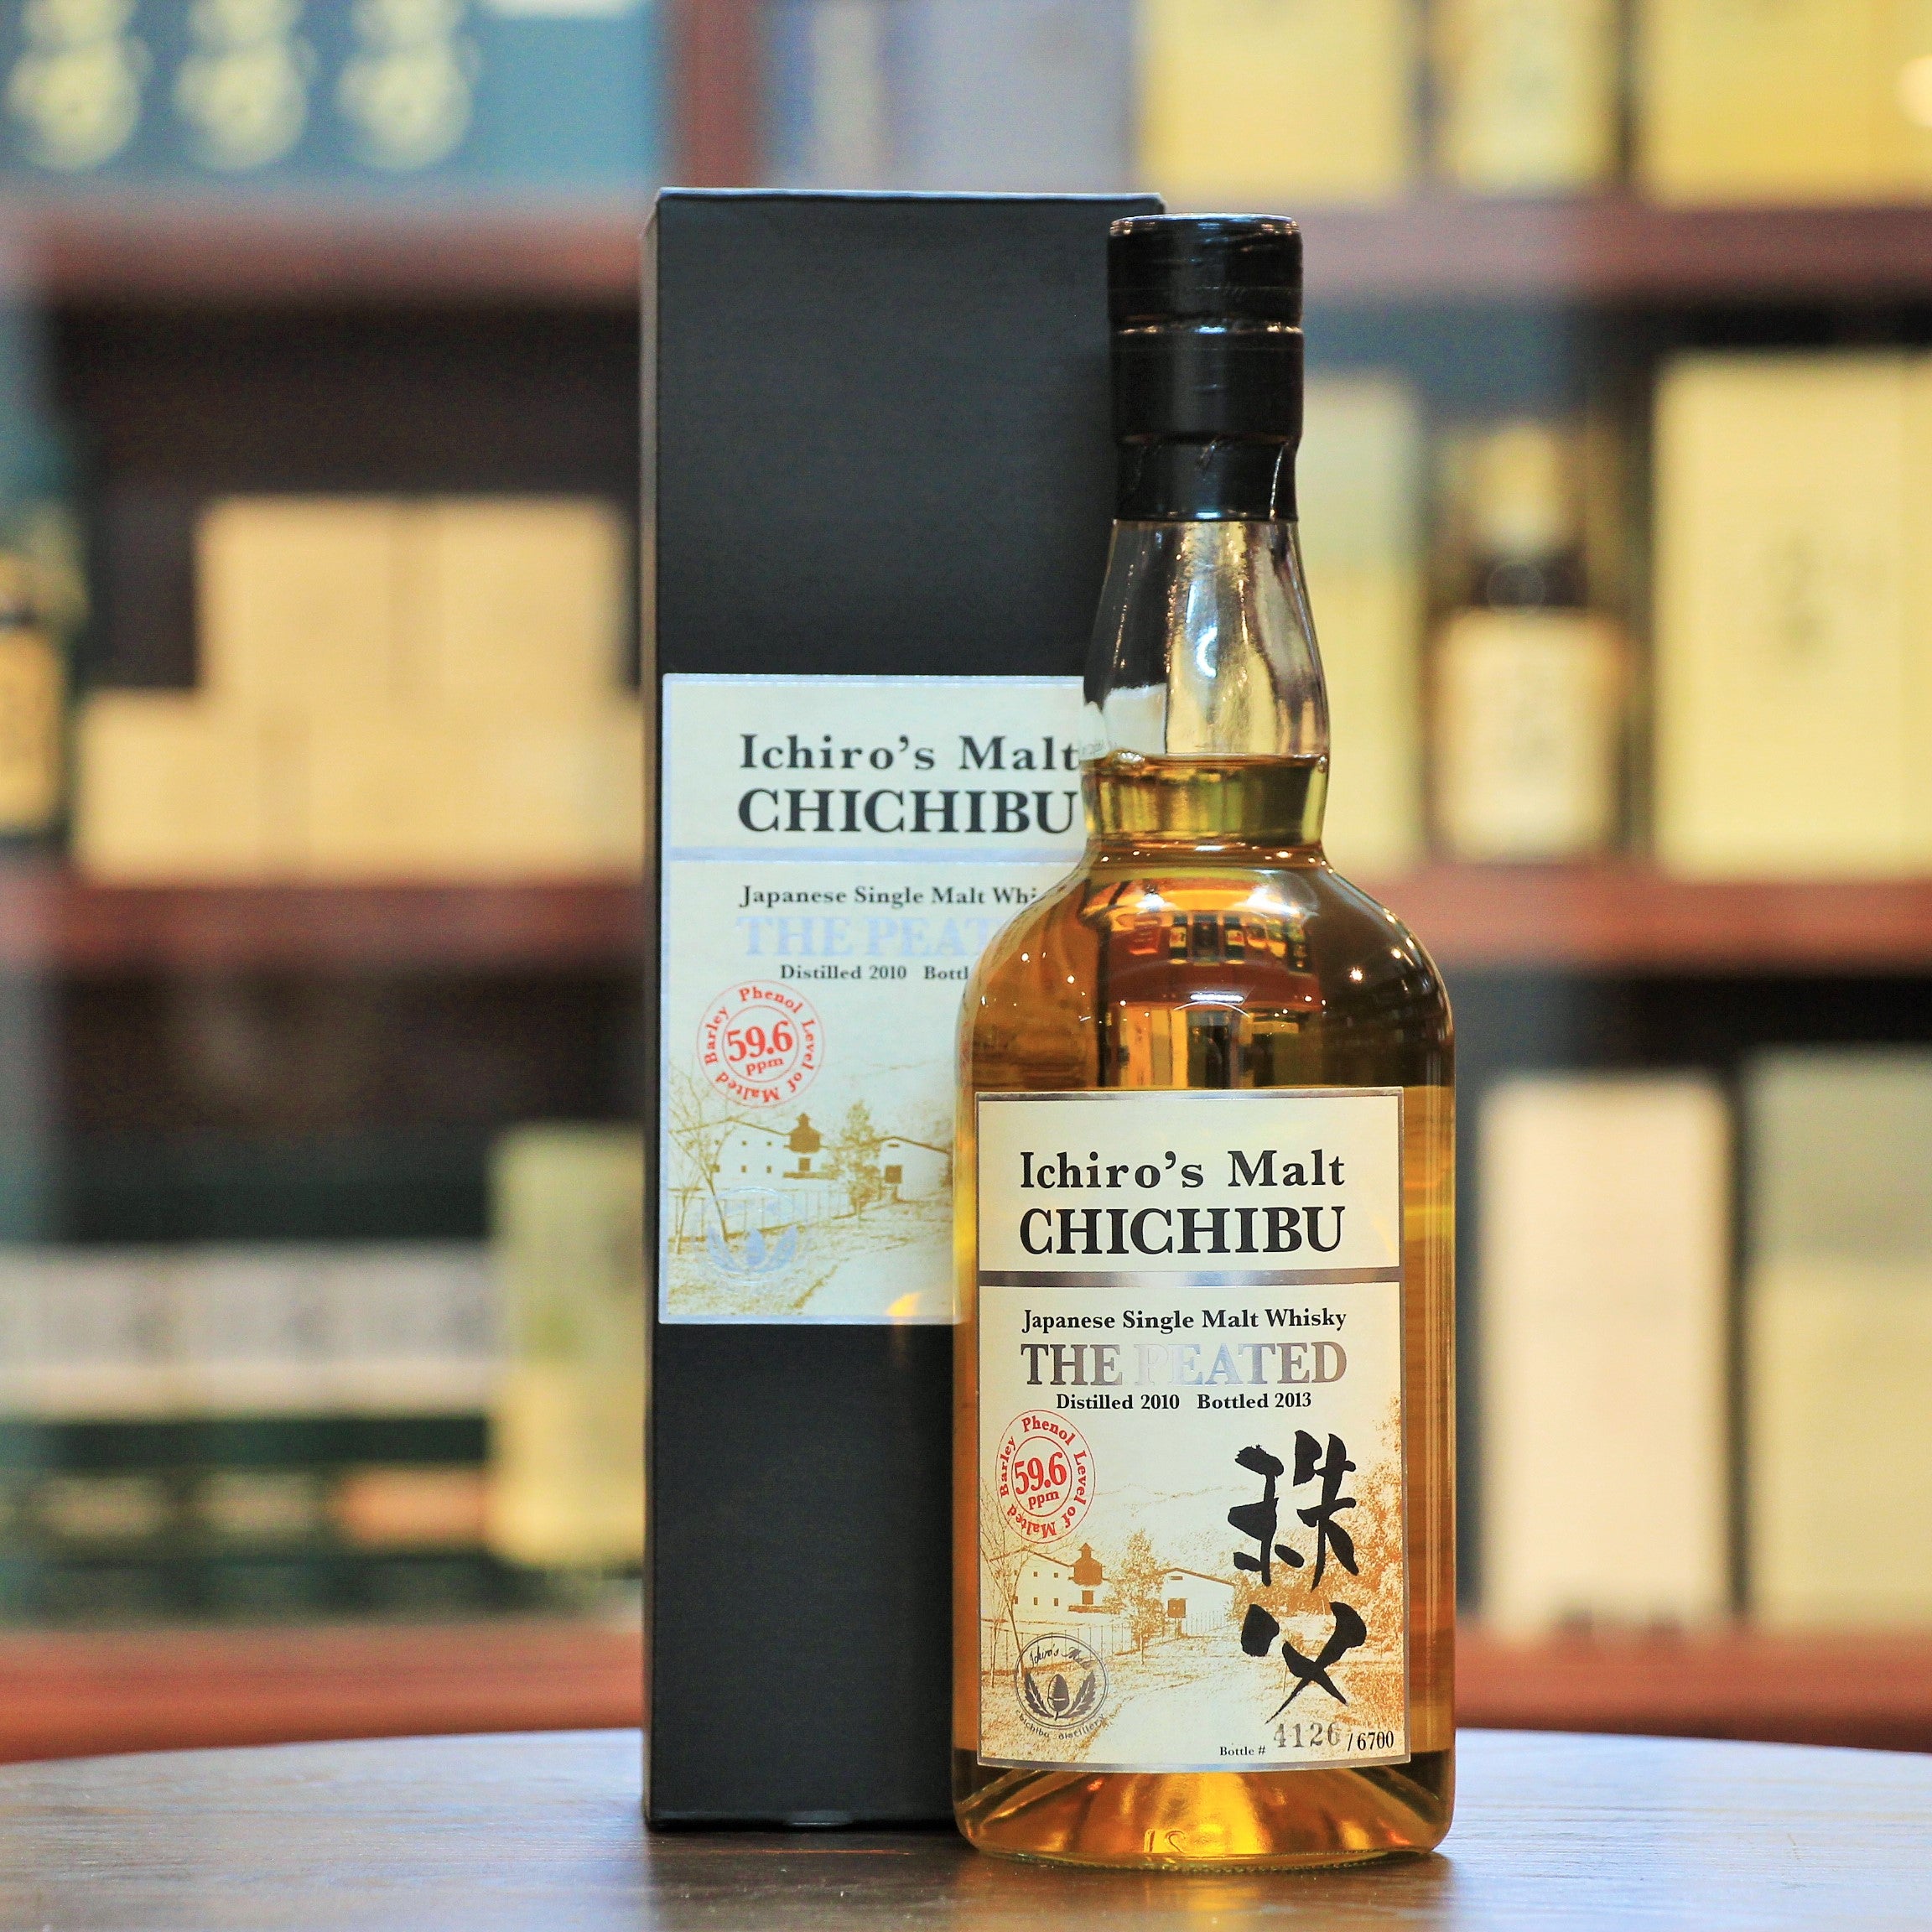 Ichiro's Malt Chichibu The Peated 2013 Japanese Single Malt Whisky 